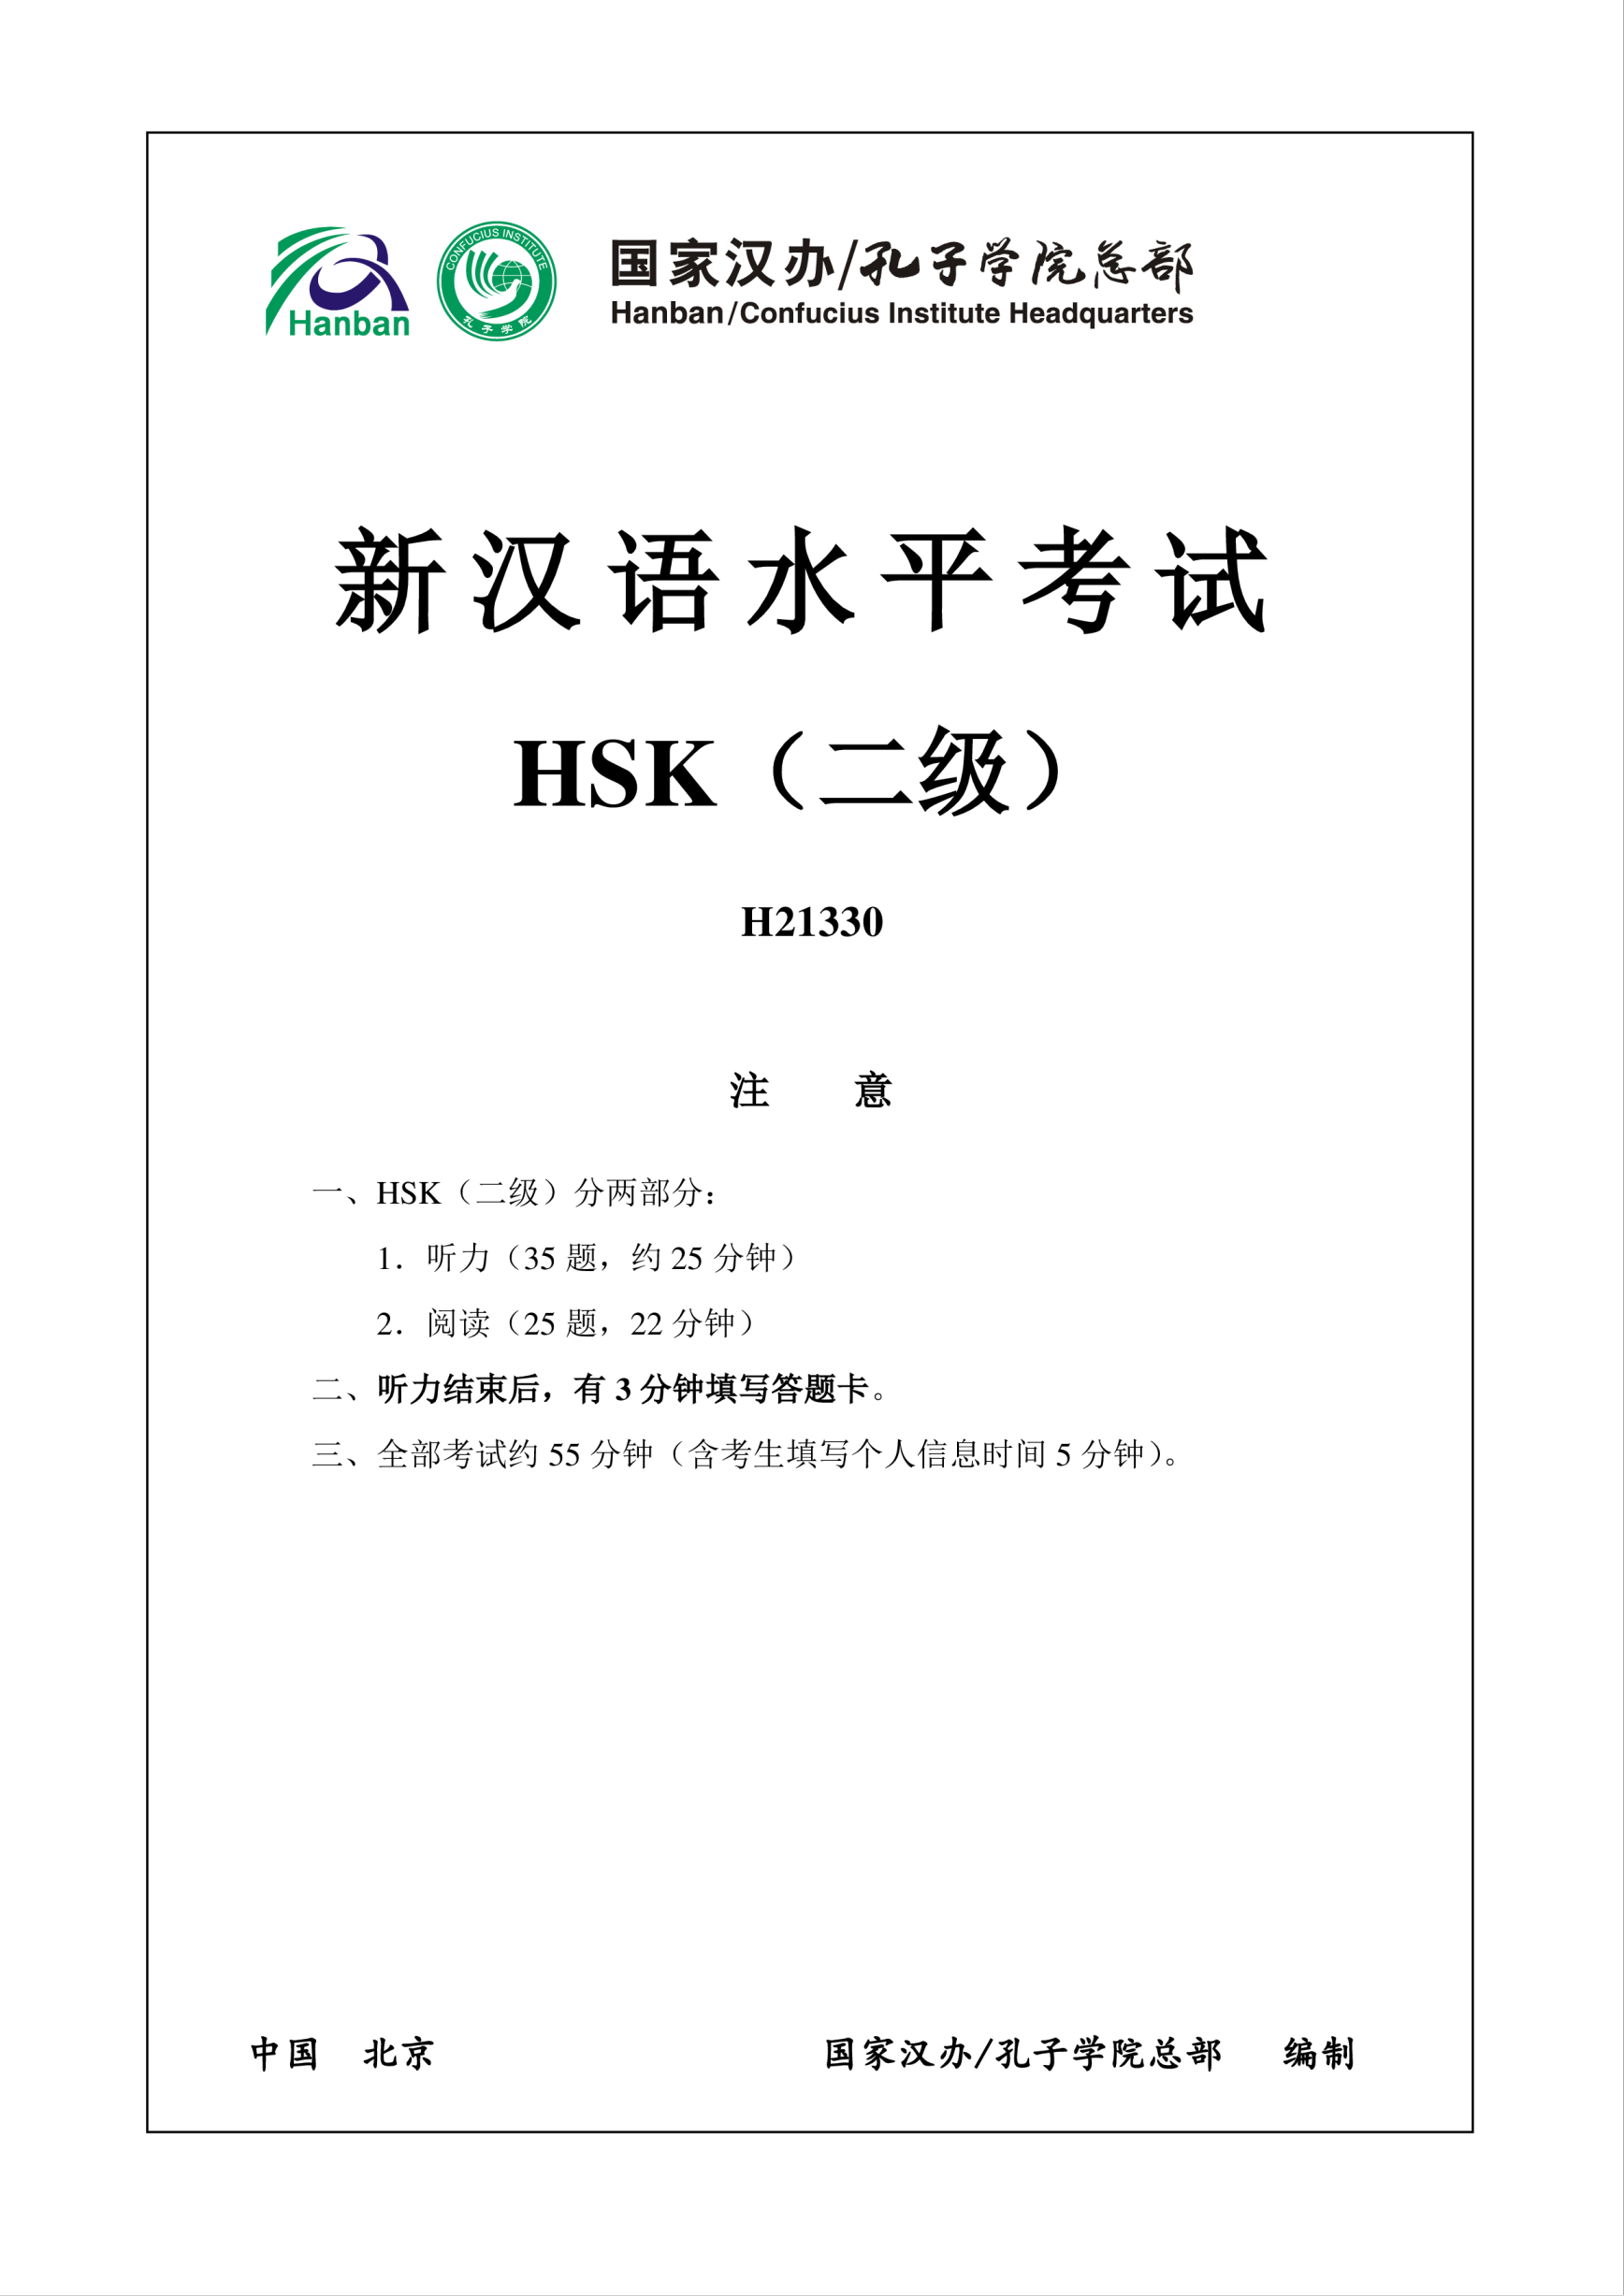 Vorschaubild der VorlageHSK2 H21330 Chinese Exam including Answers, Audio